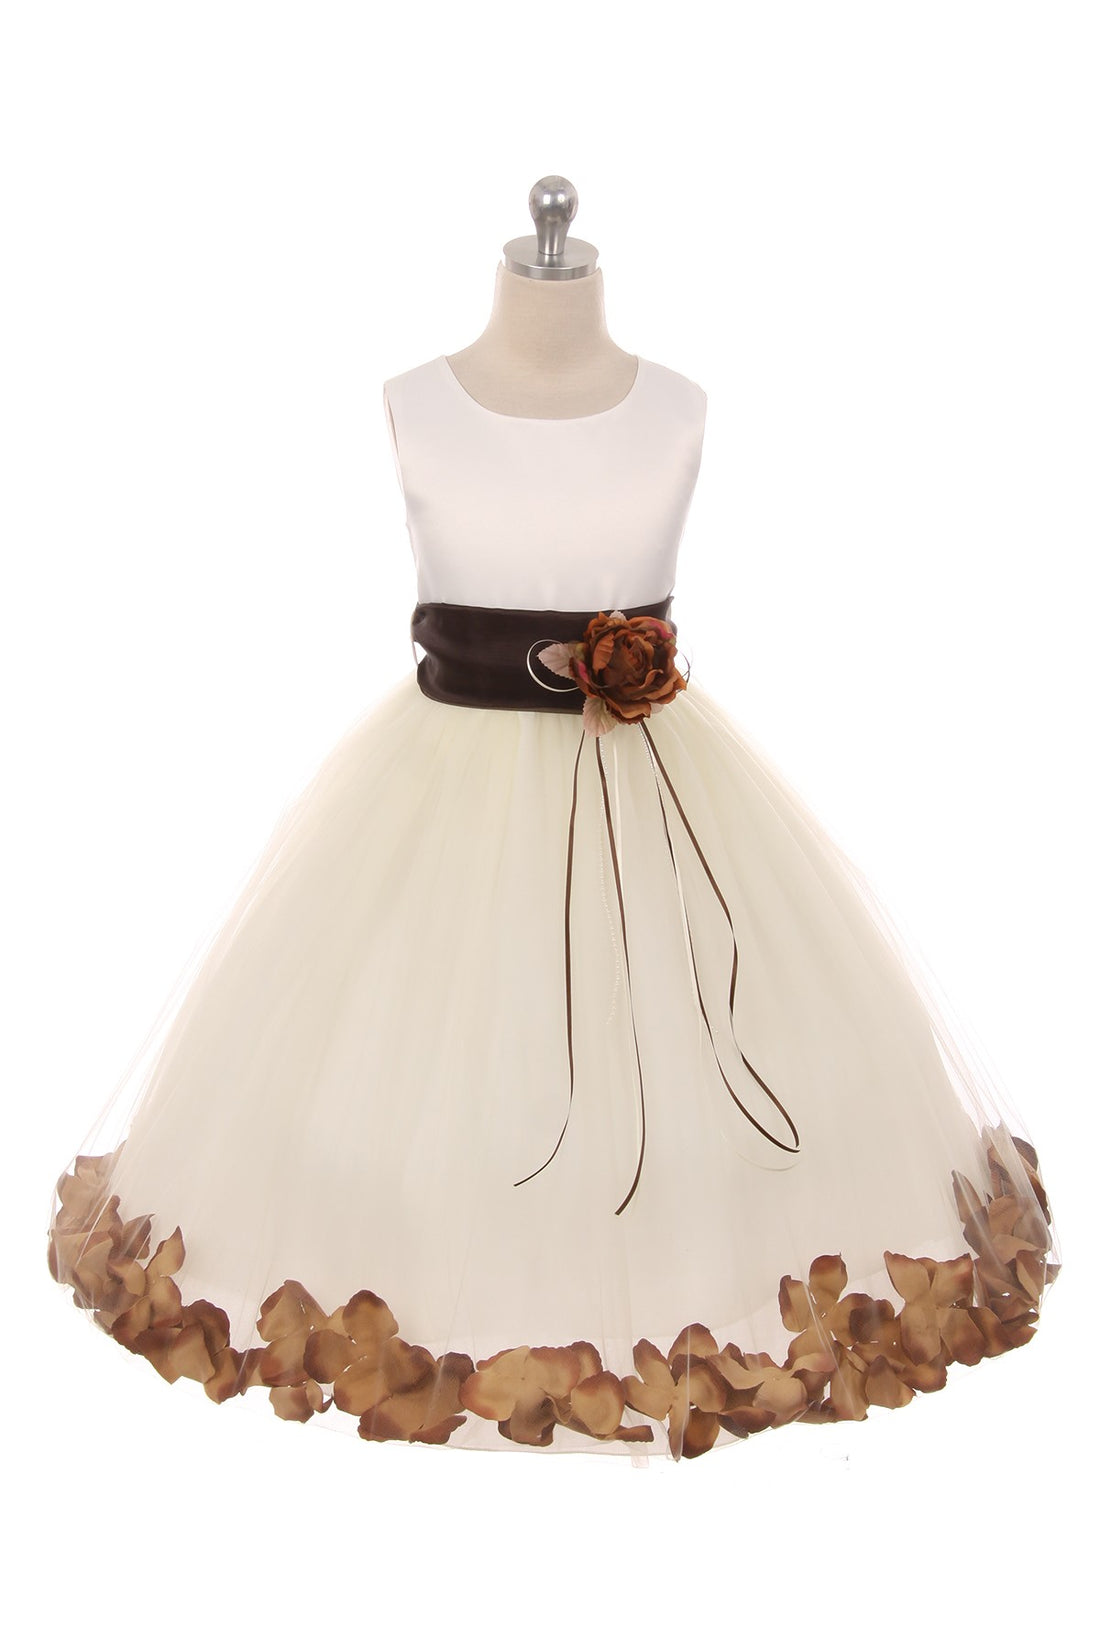 Satin Flower Petal White Flower Girl Dress 1of2 by AS160B Kids Dream - Girl Formal Dresses